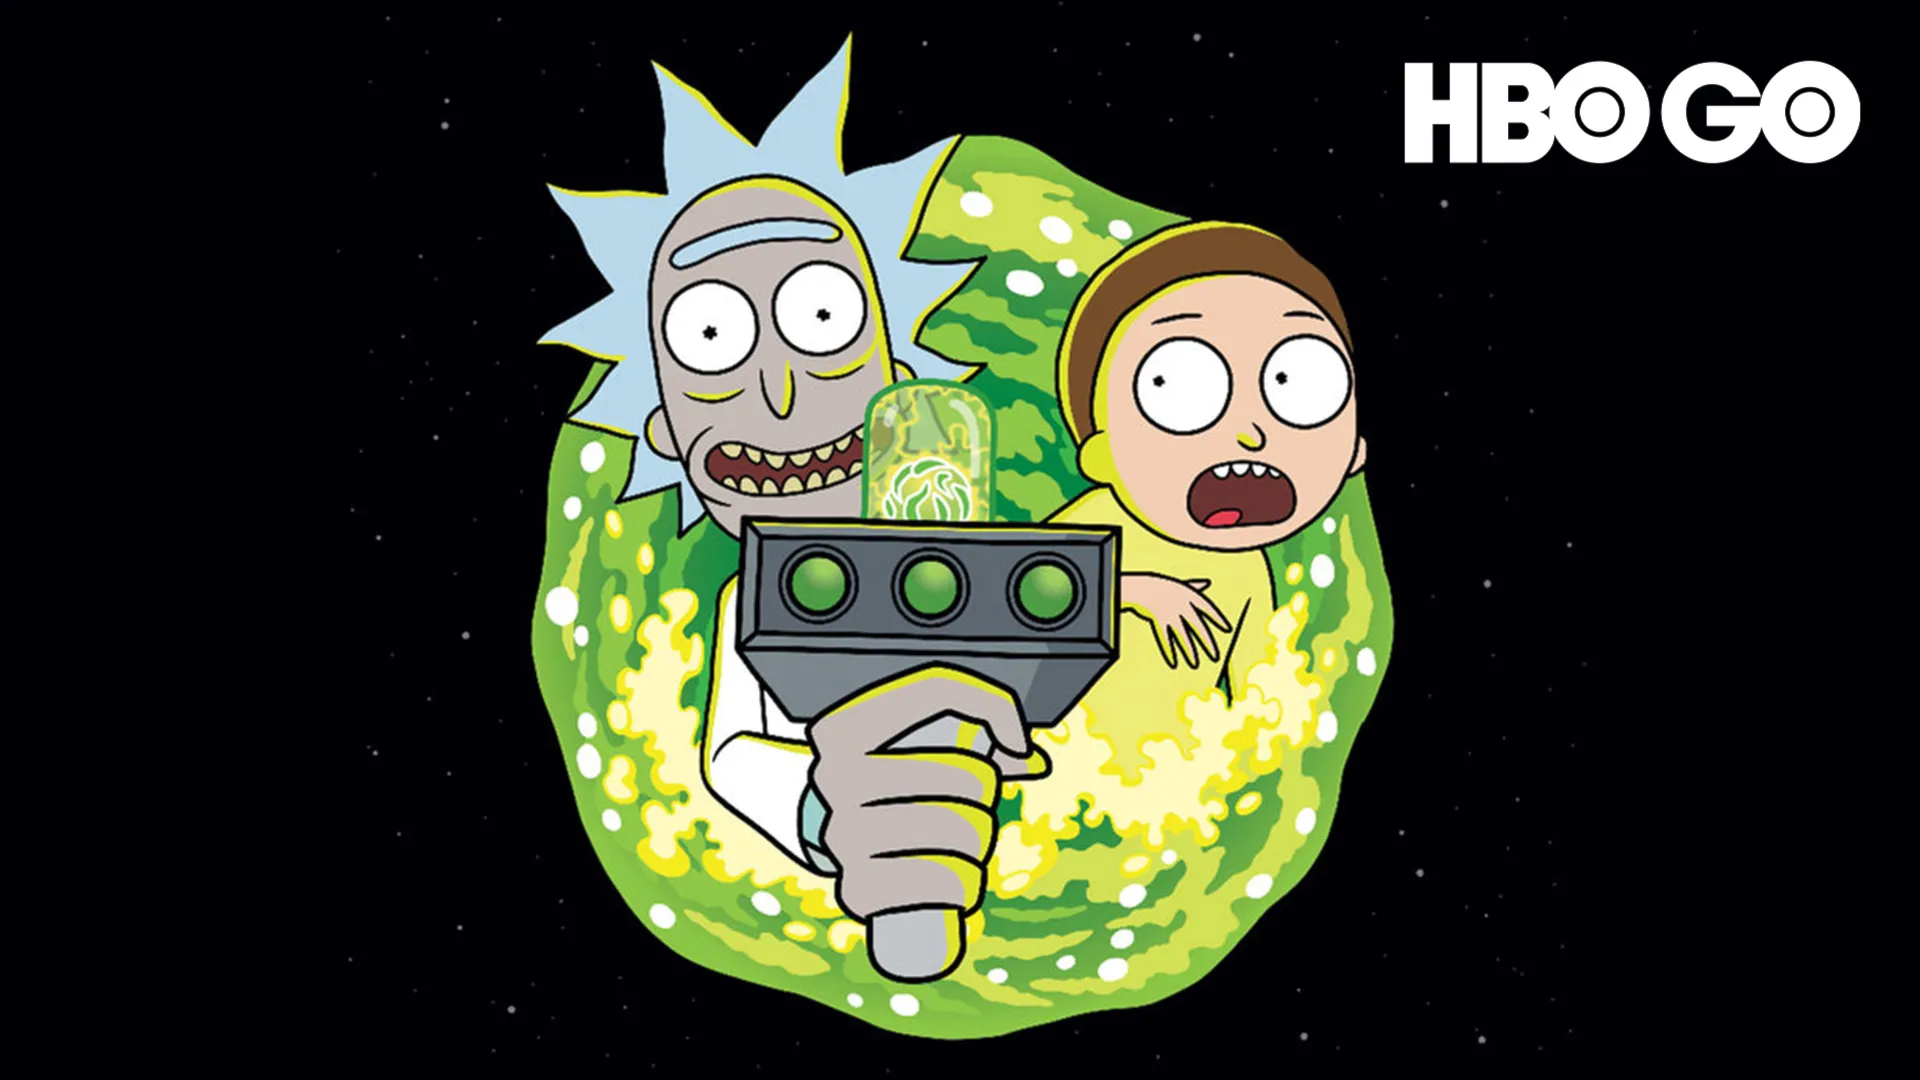 Rick Và Morty - Phần 4